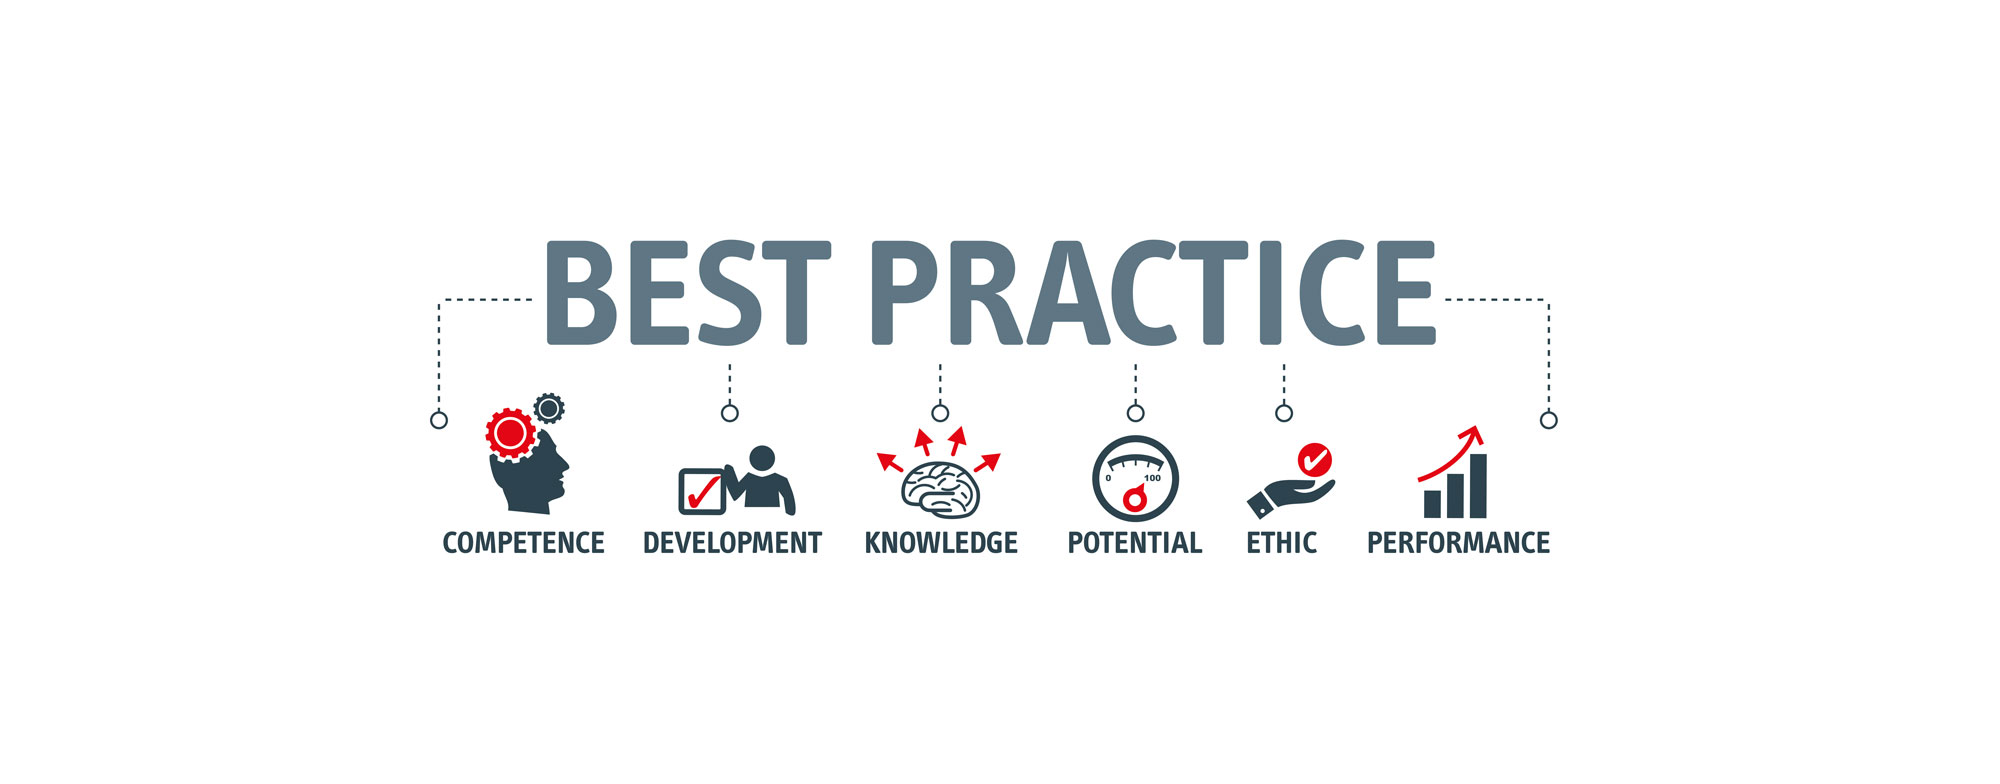 10 Secrets to AdWords Best Practice #2